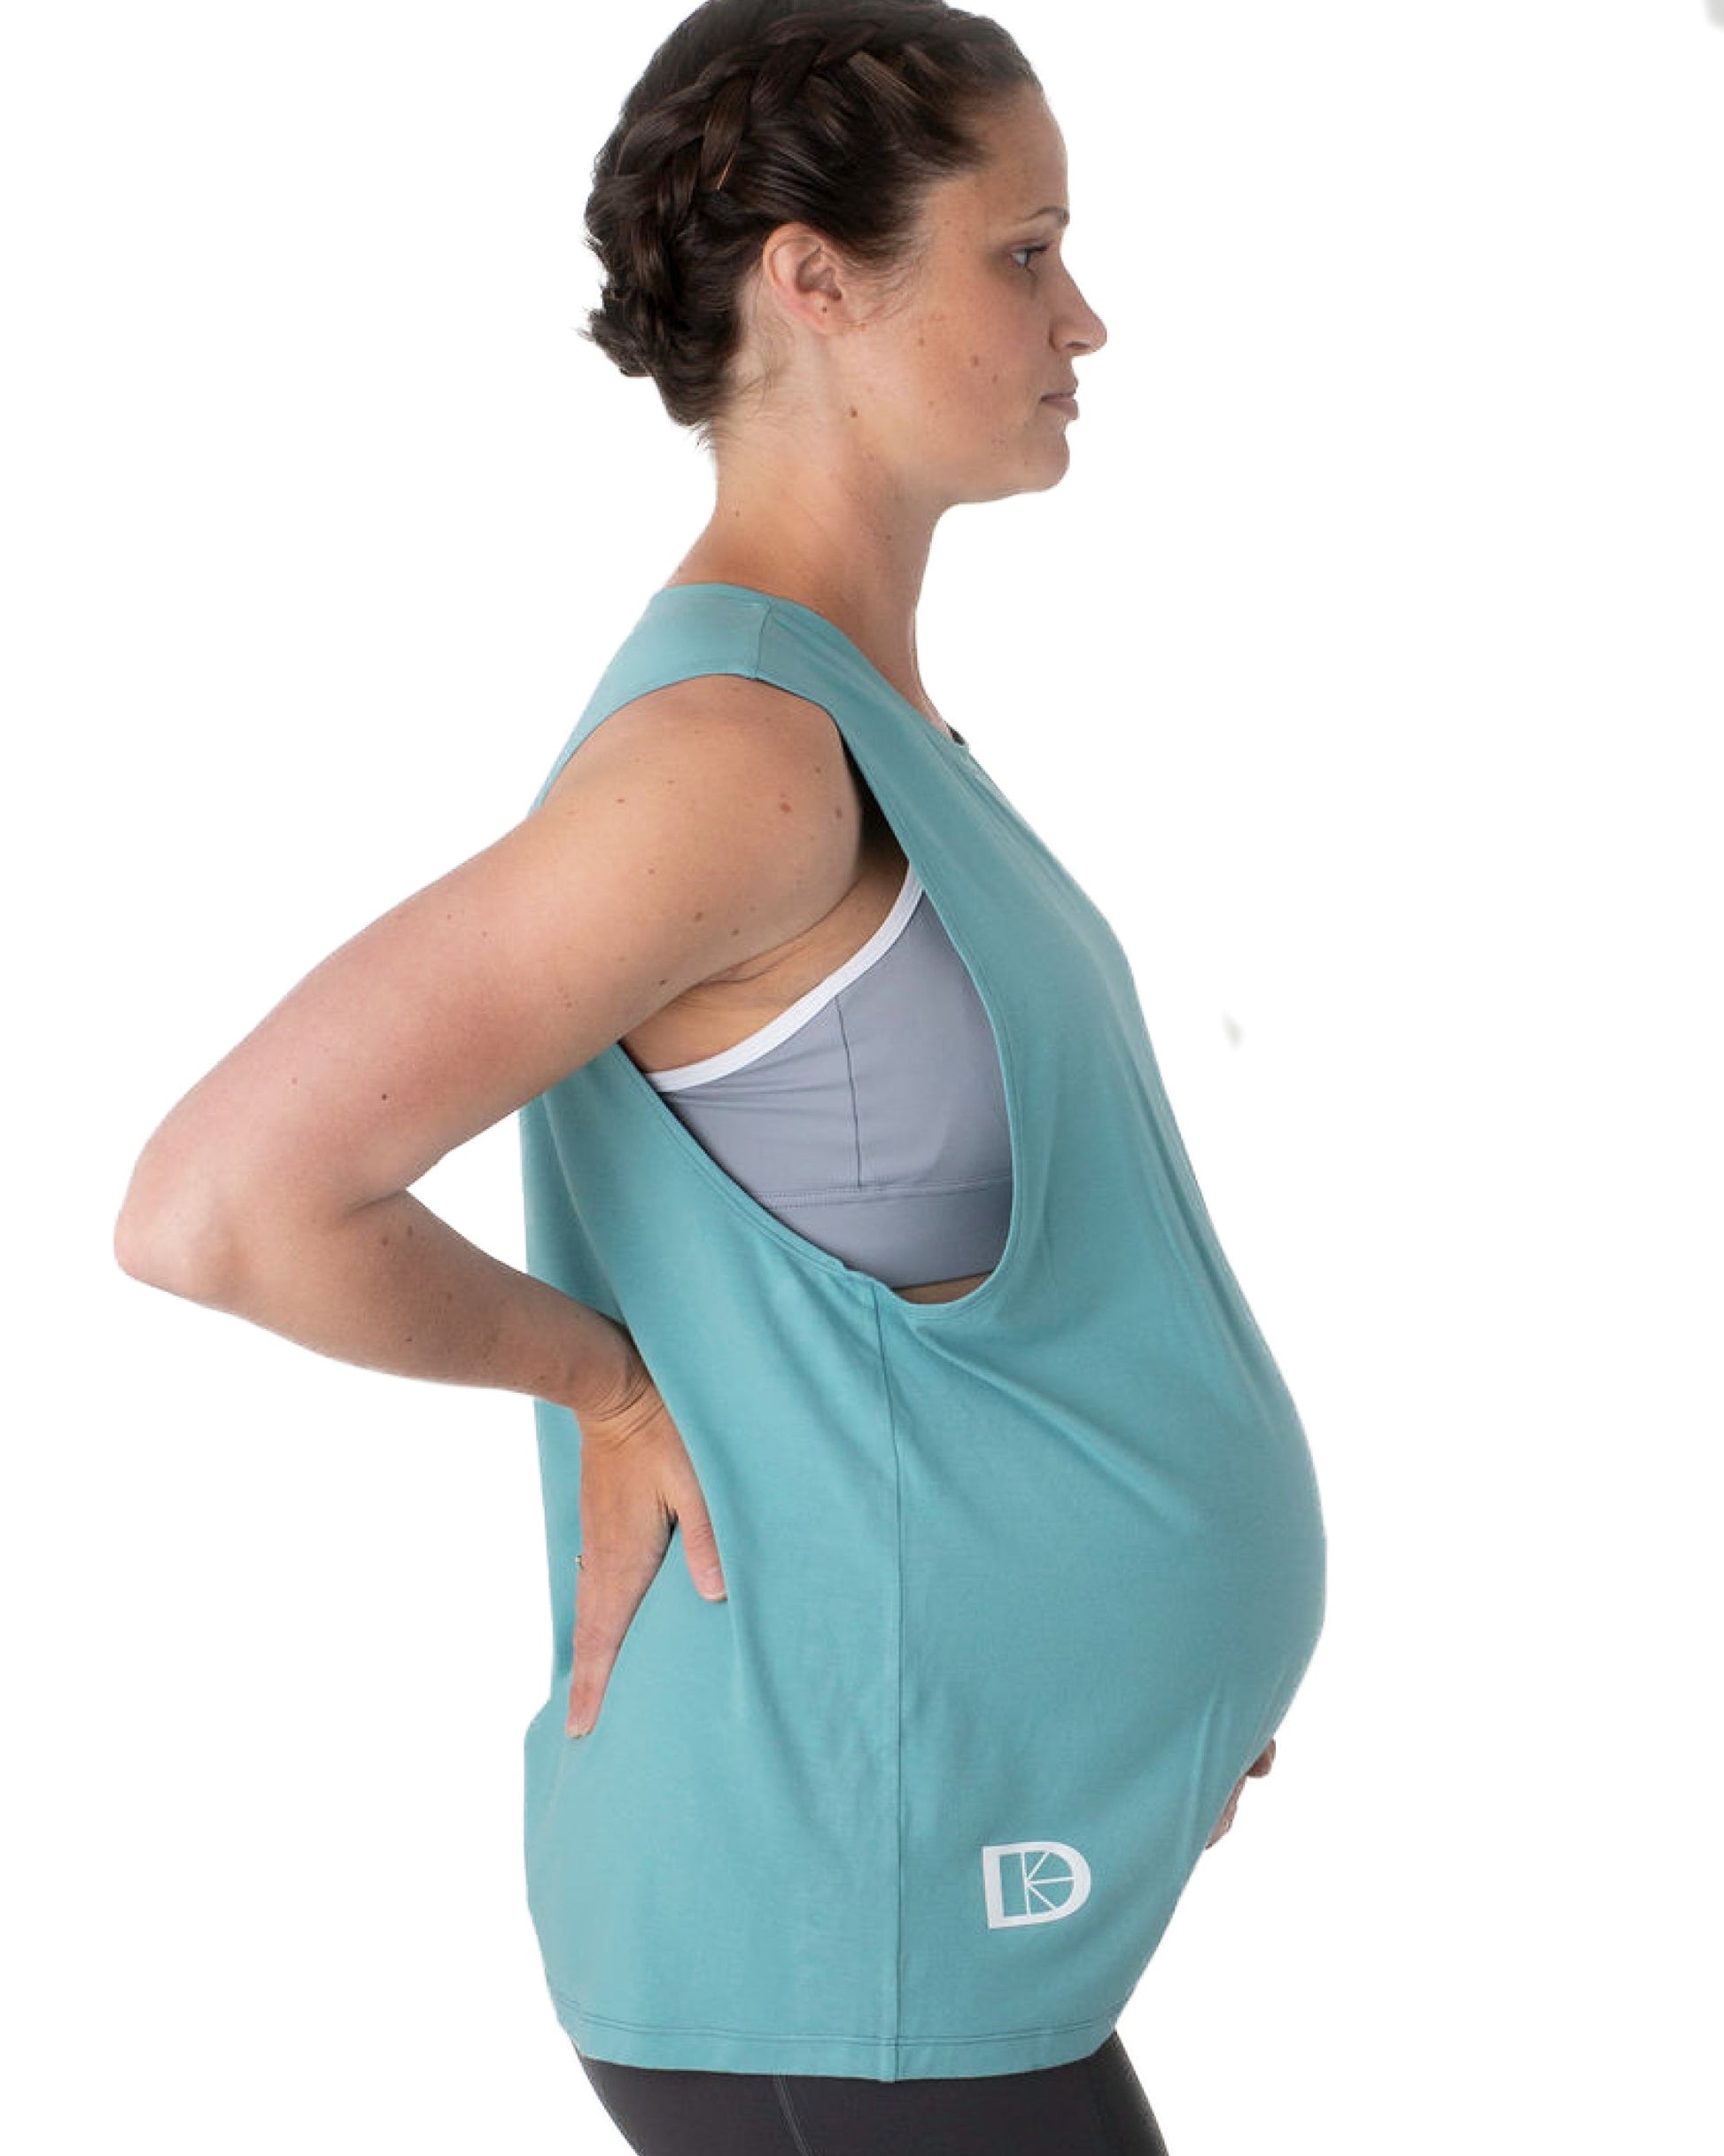 Pregnancy vest